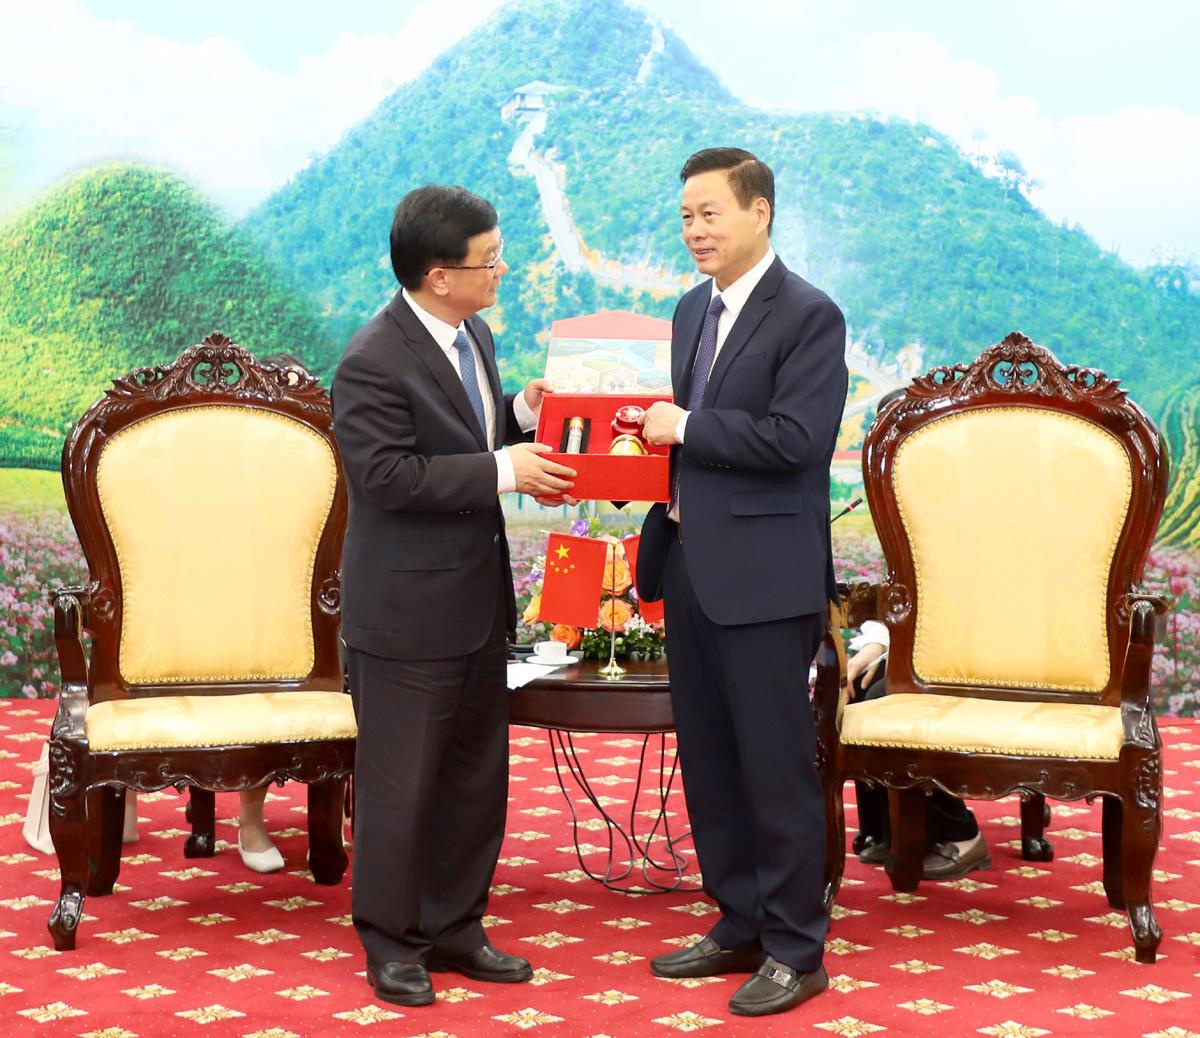 Chủ tịch UBND tỉnh Nguyễn Văn Sơn tặng quà - sản phẩm nông sản đặc trưng của tỉnh cho Phó tỉnh trưởng Chính quyền nhân dân tỉnh Vân Nam Dương Bân.